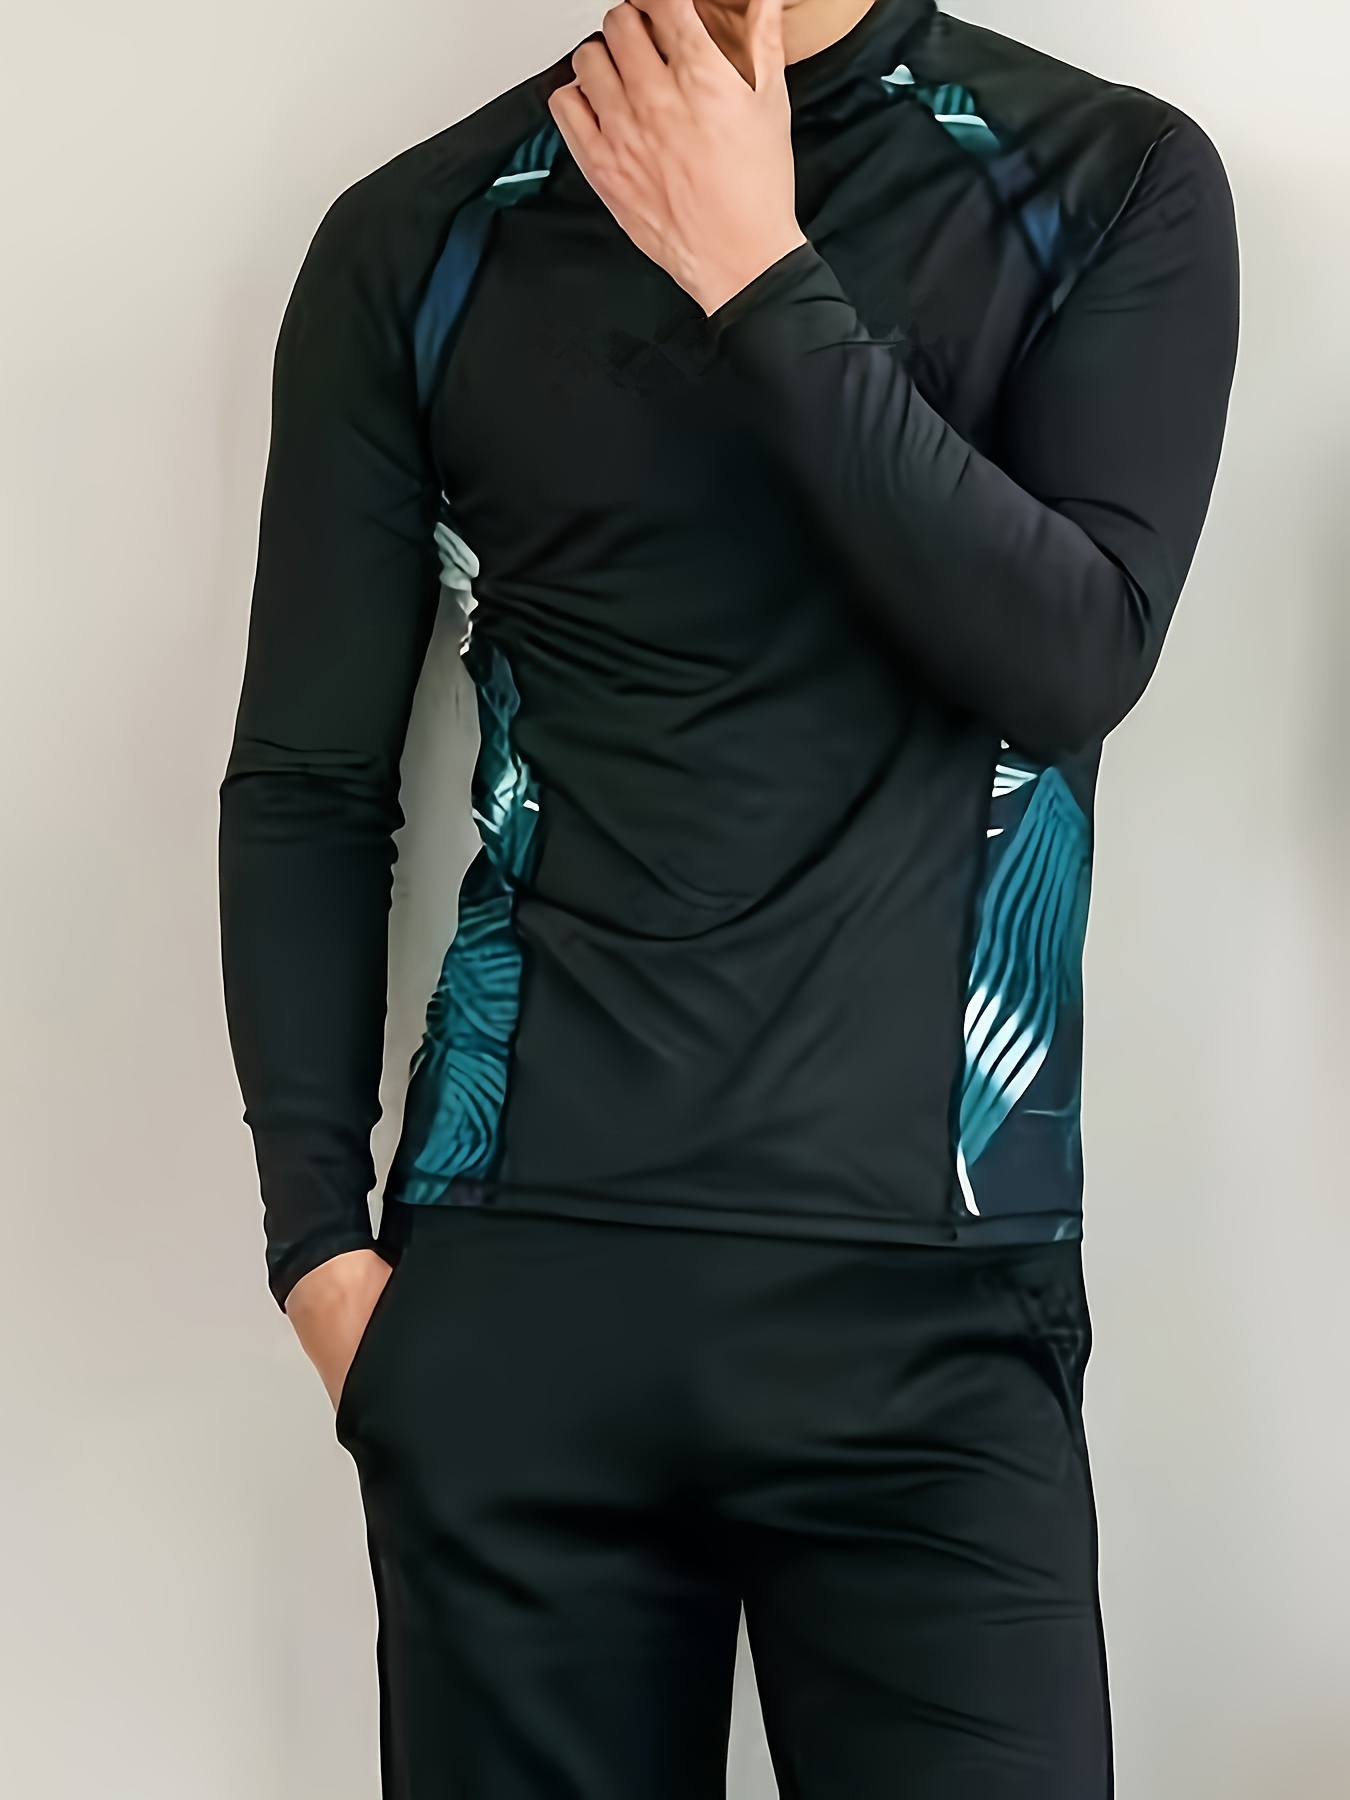 Joysummer Men Women Wetsuit 3mm Neoprene Swimwear - Full Diving Suits, One  Piece Swimsuit Long Sleeve Back Zip Snorkeling Surfing Winter Swimwear Dive  Skin, Men Blue M, Wetsuits -  Canada